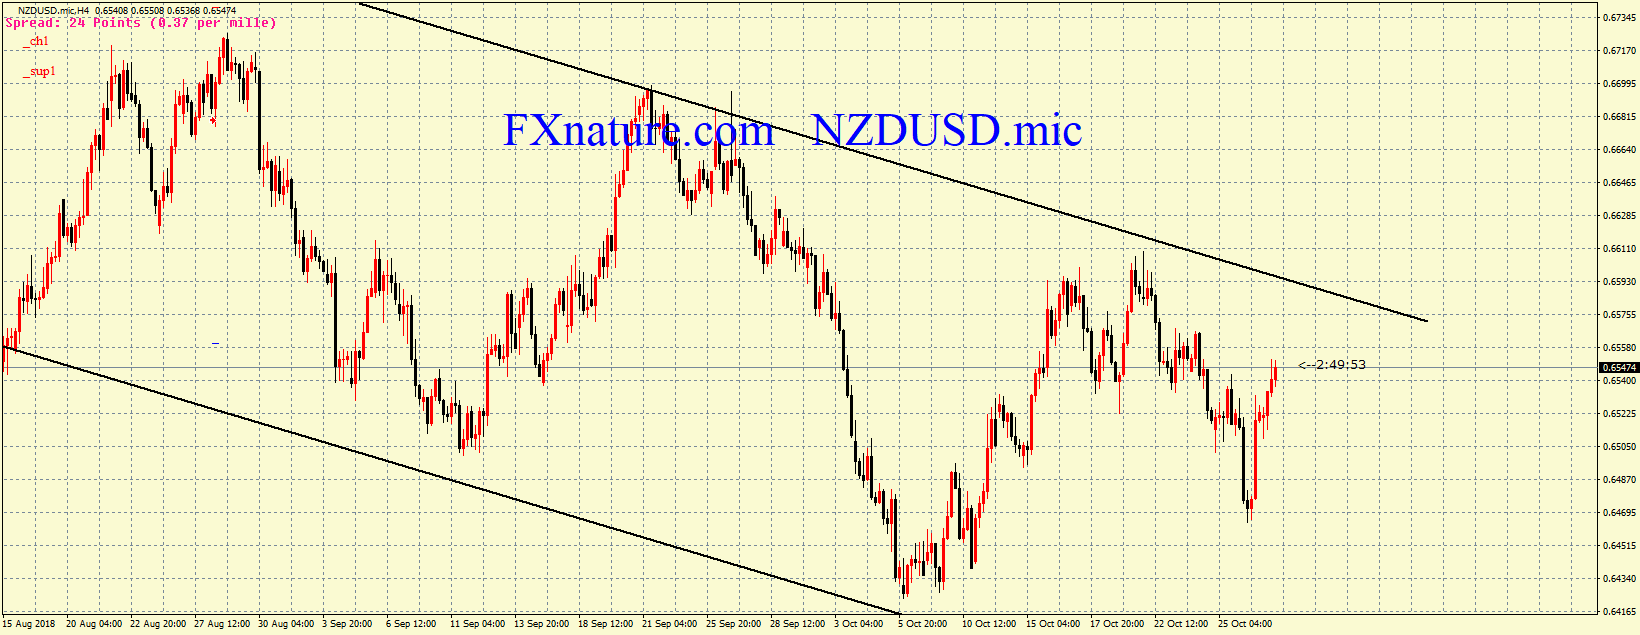  دلار نیوزلند دلار 